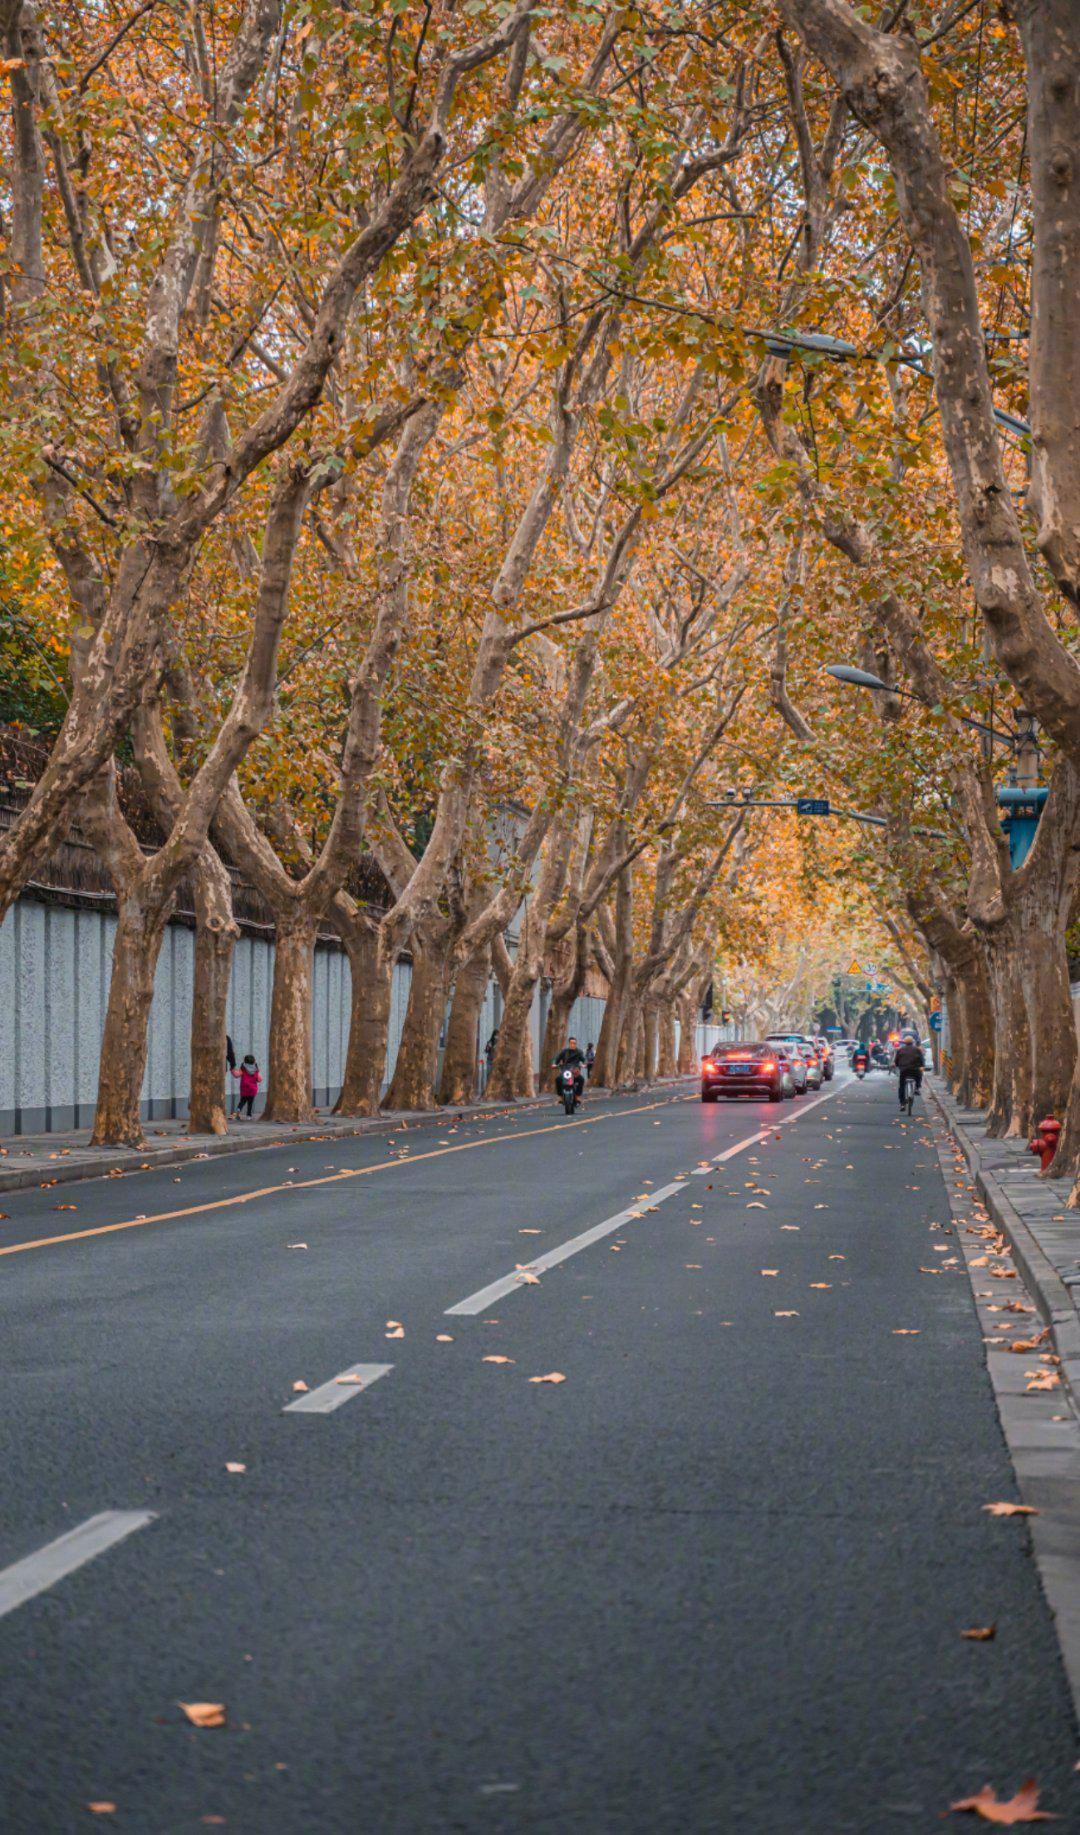 上海武康路街道两侧都是梧桐树初冬时节